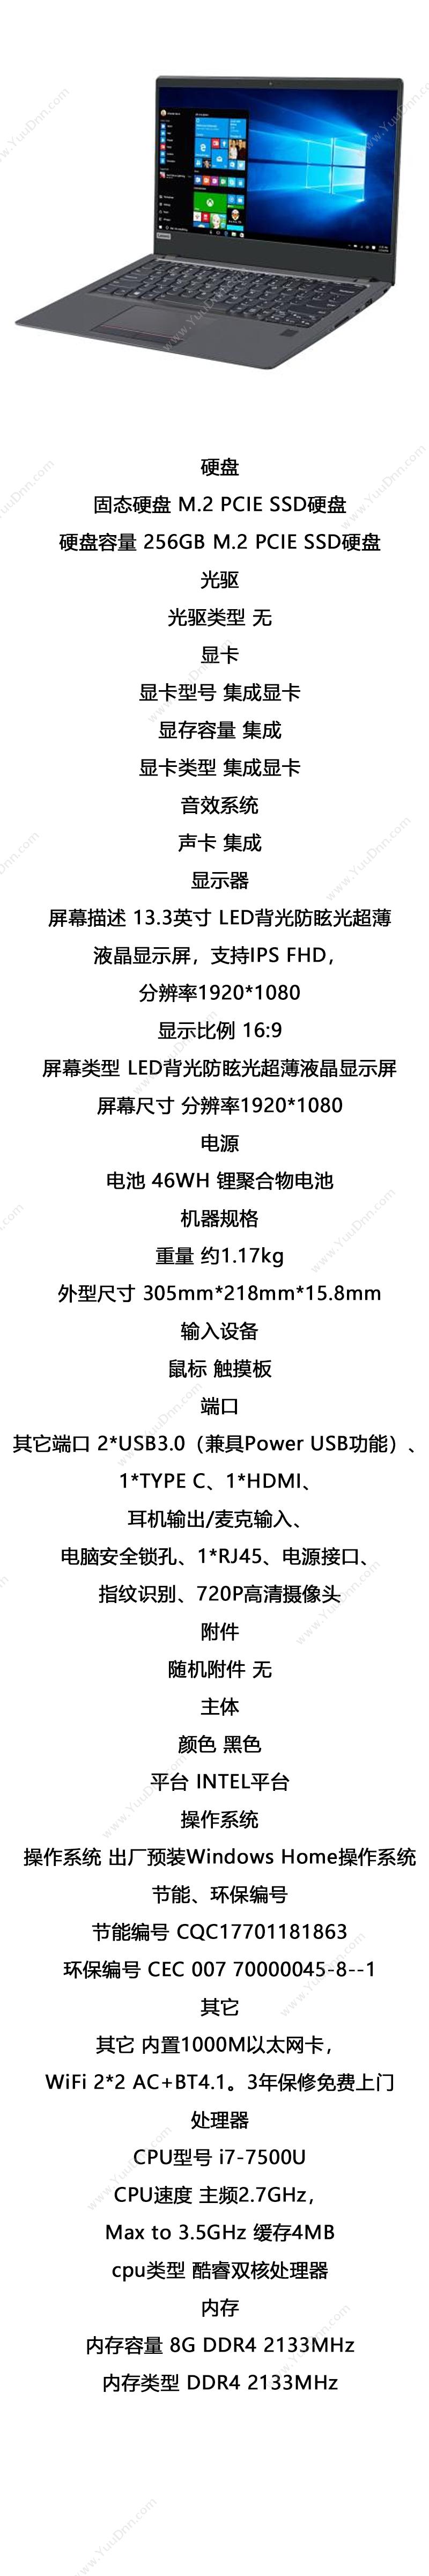 联想 Lenovo 昭阳K32-80038（i7/8G/256G/集显） 笔记本